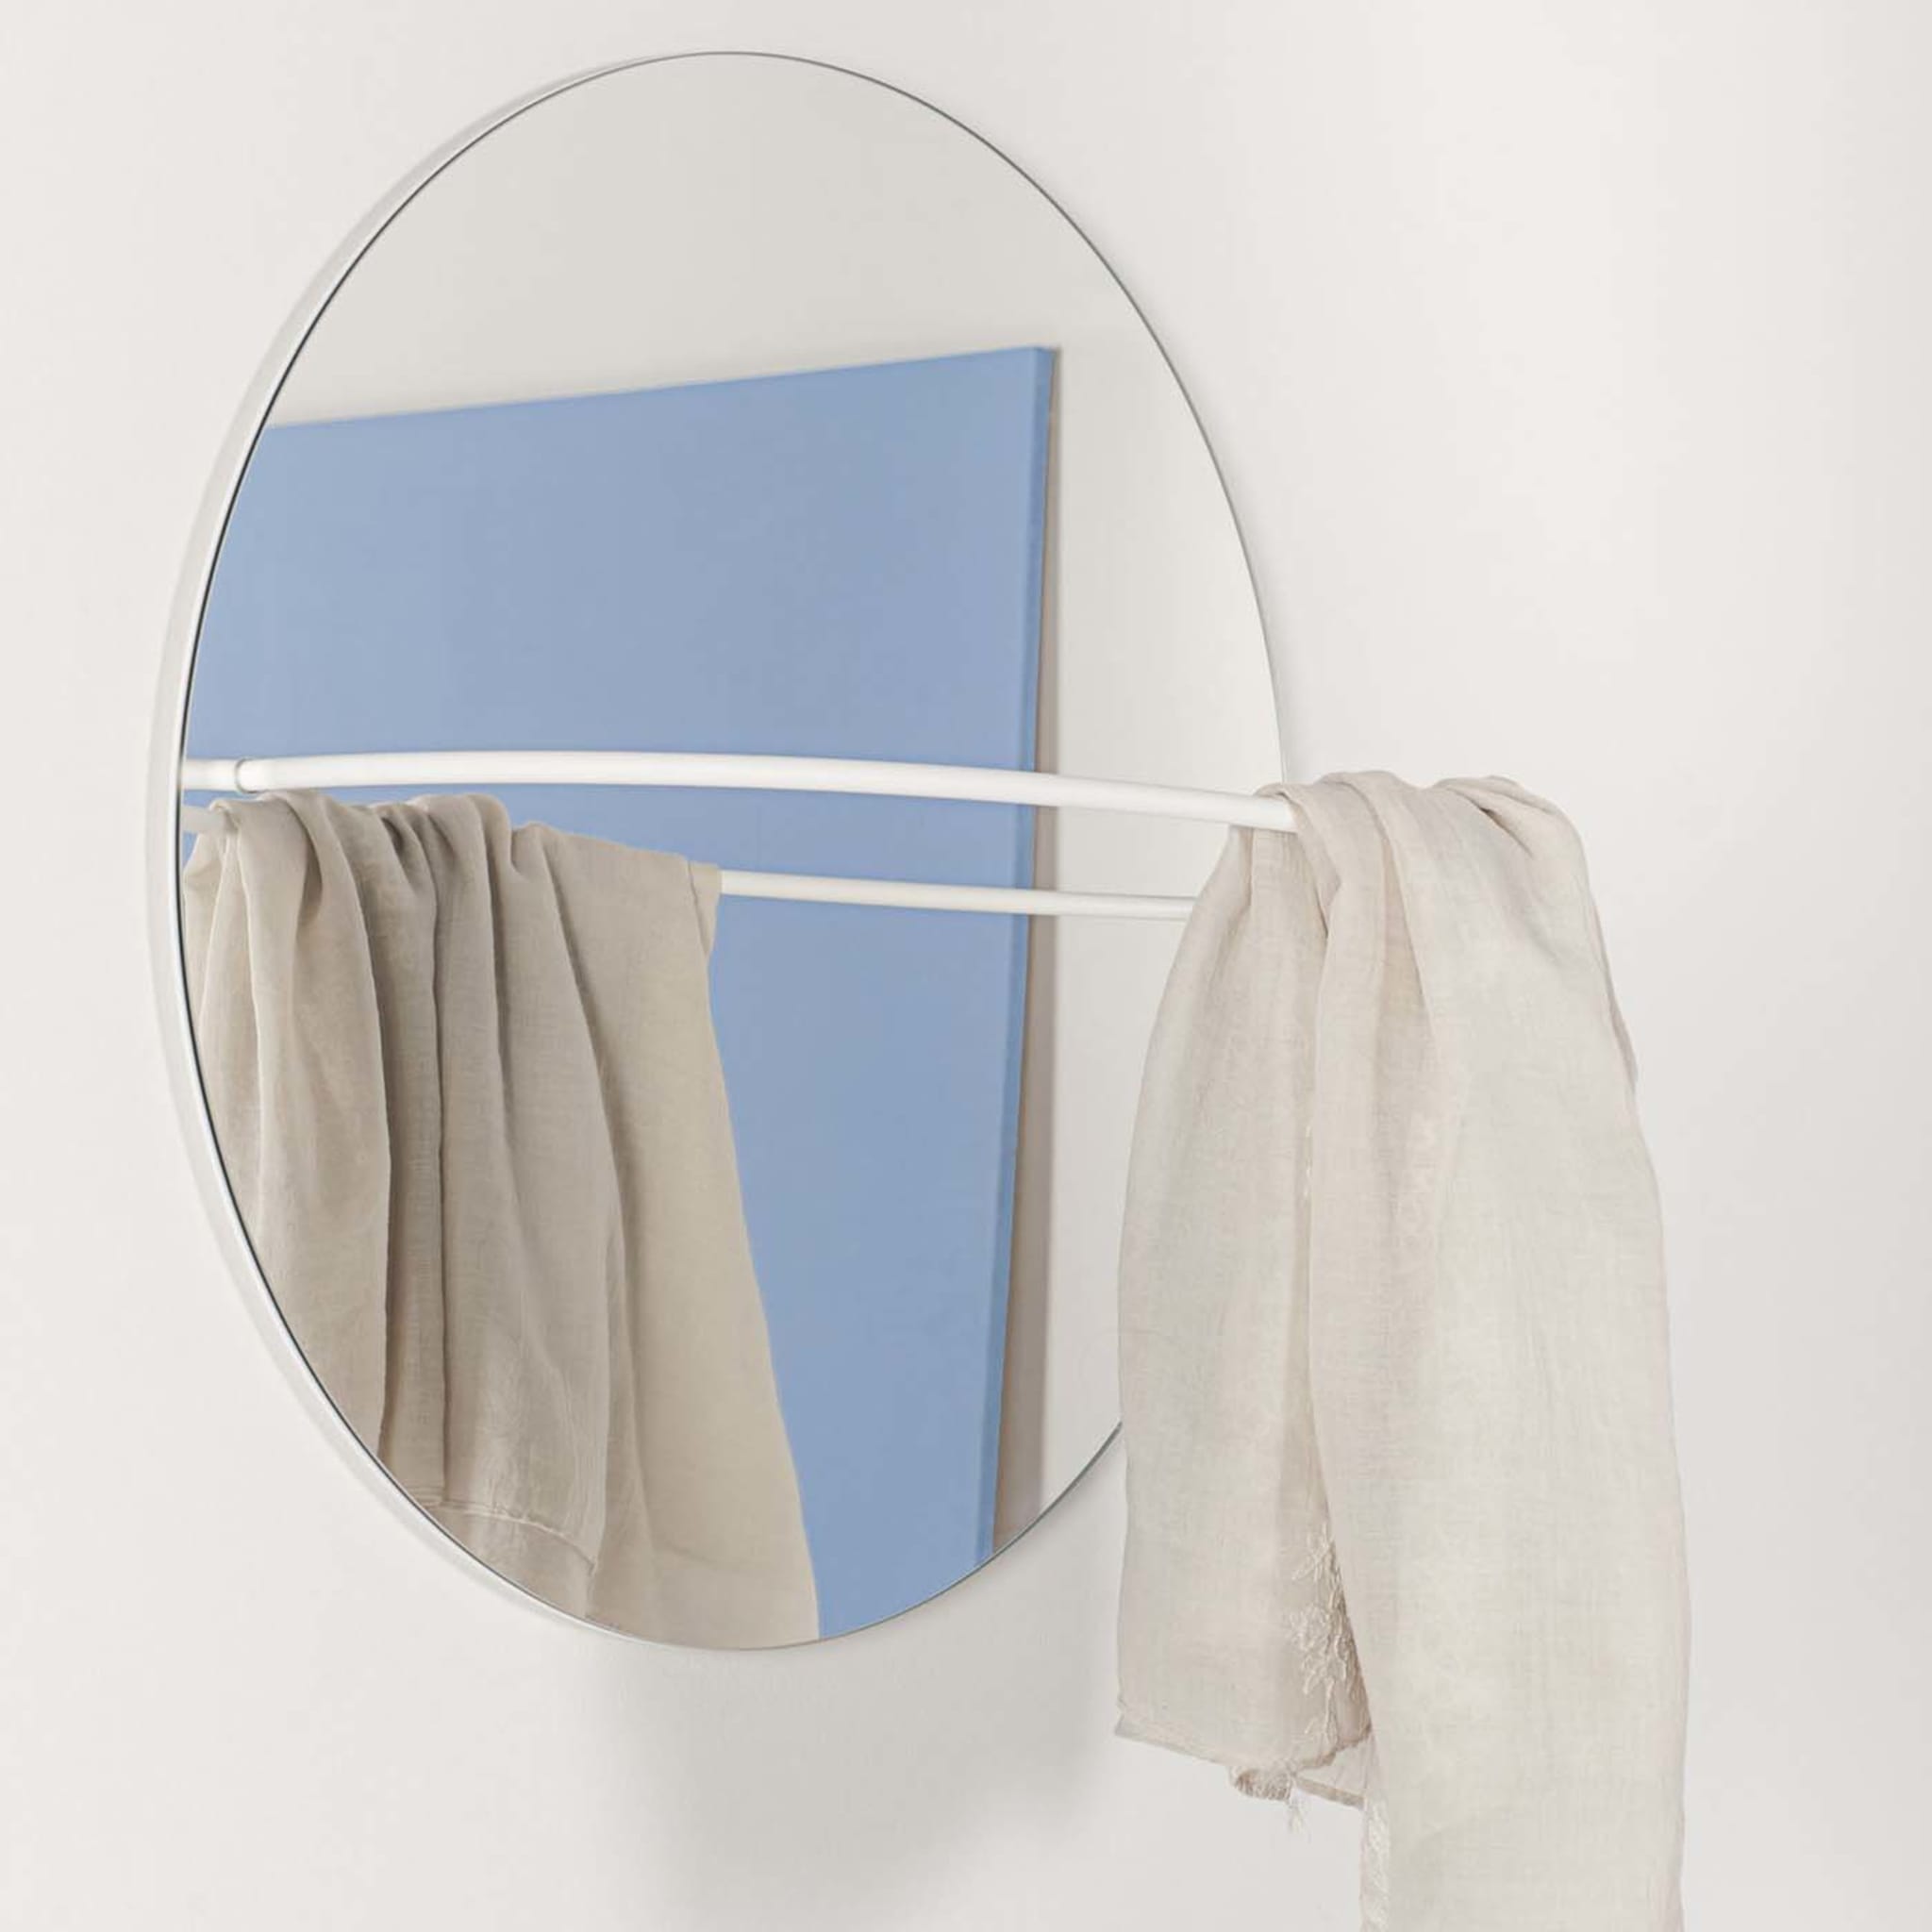 Estensioni White Loop Mirror by Valerio Paula Ciampicacigli - Alternative view 2